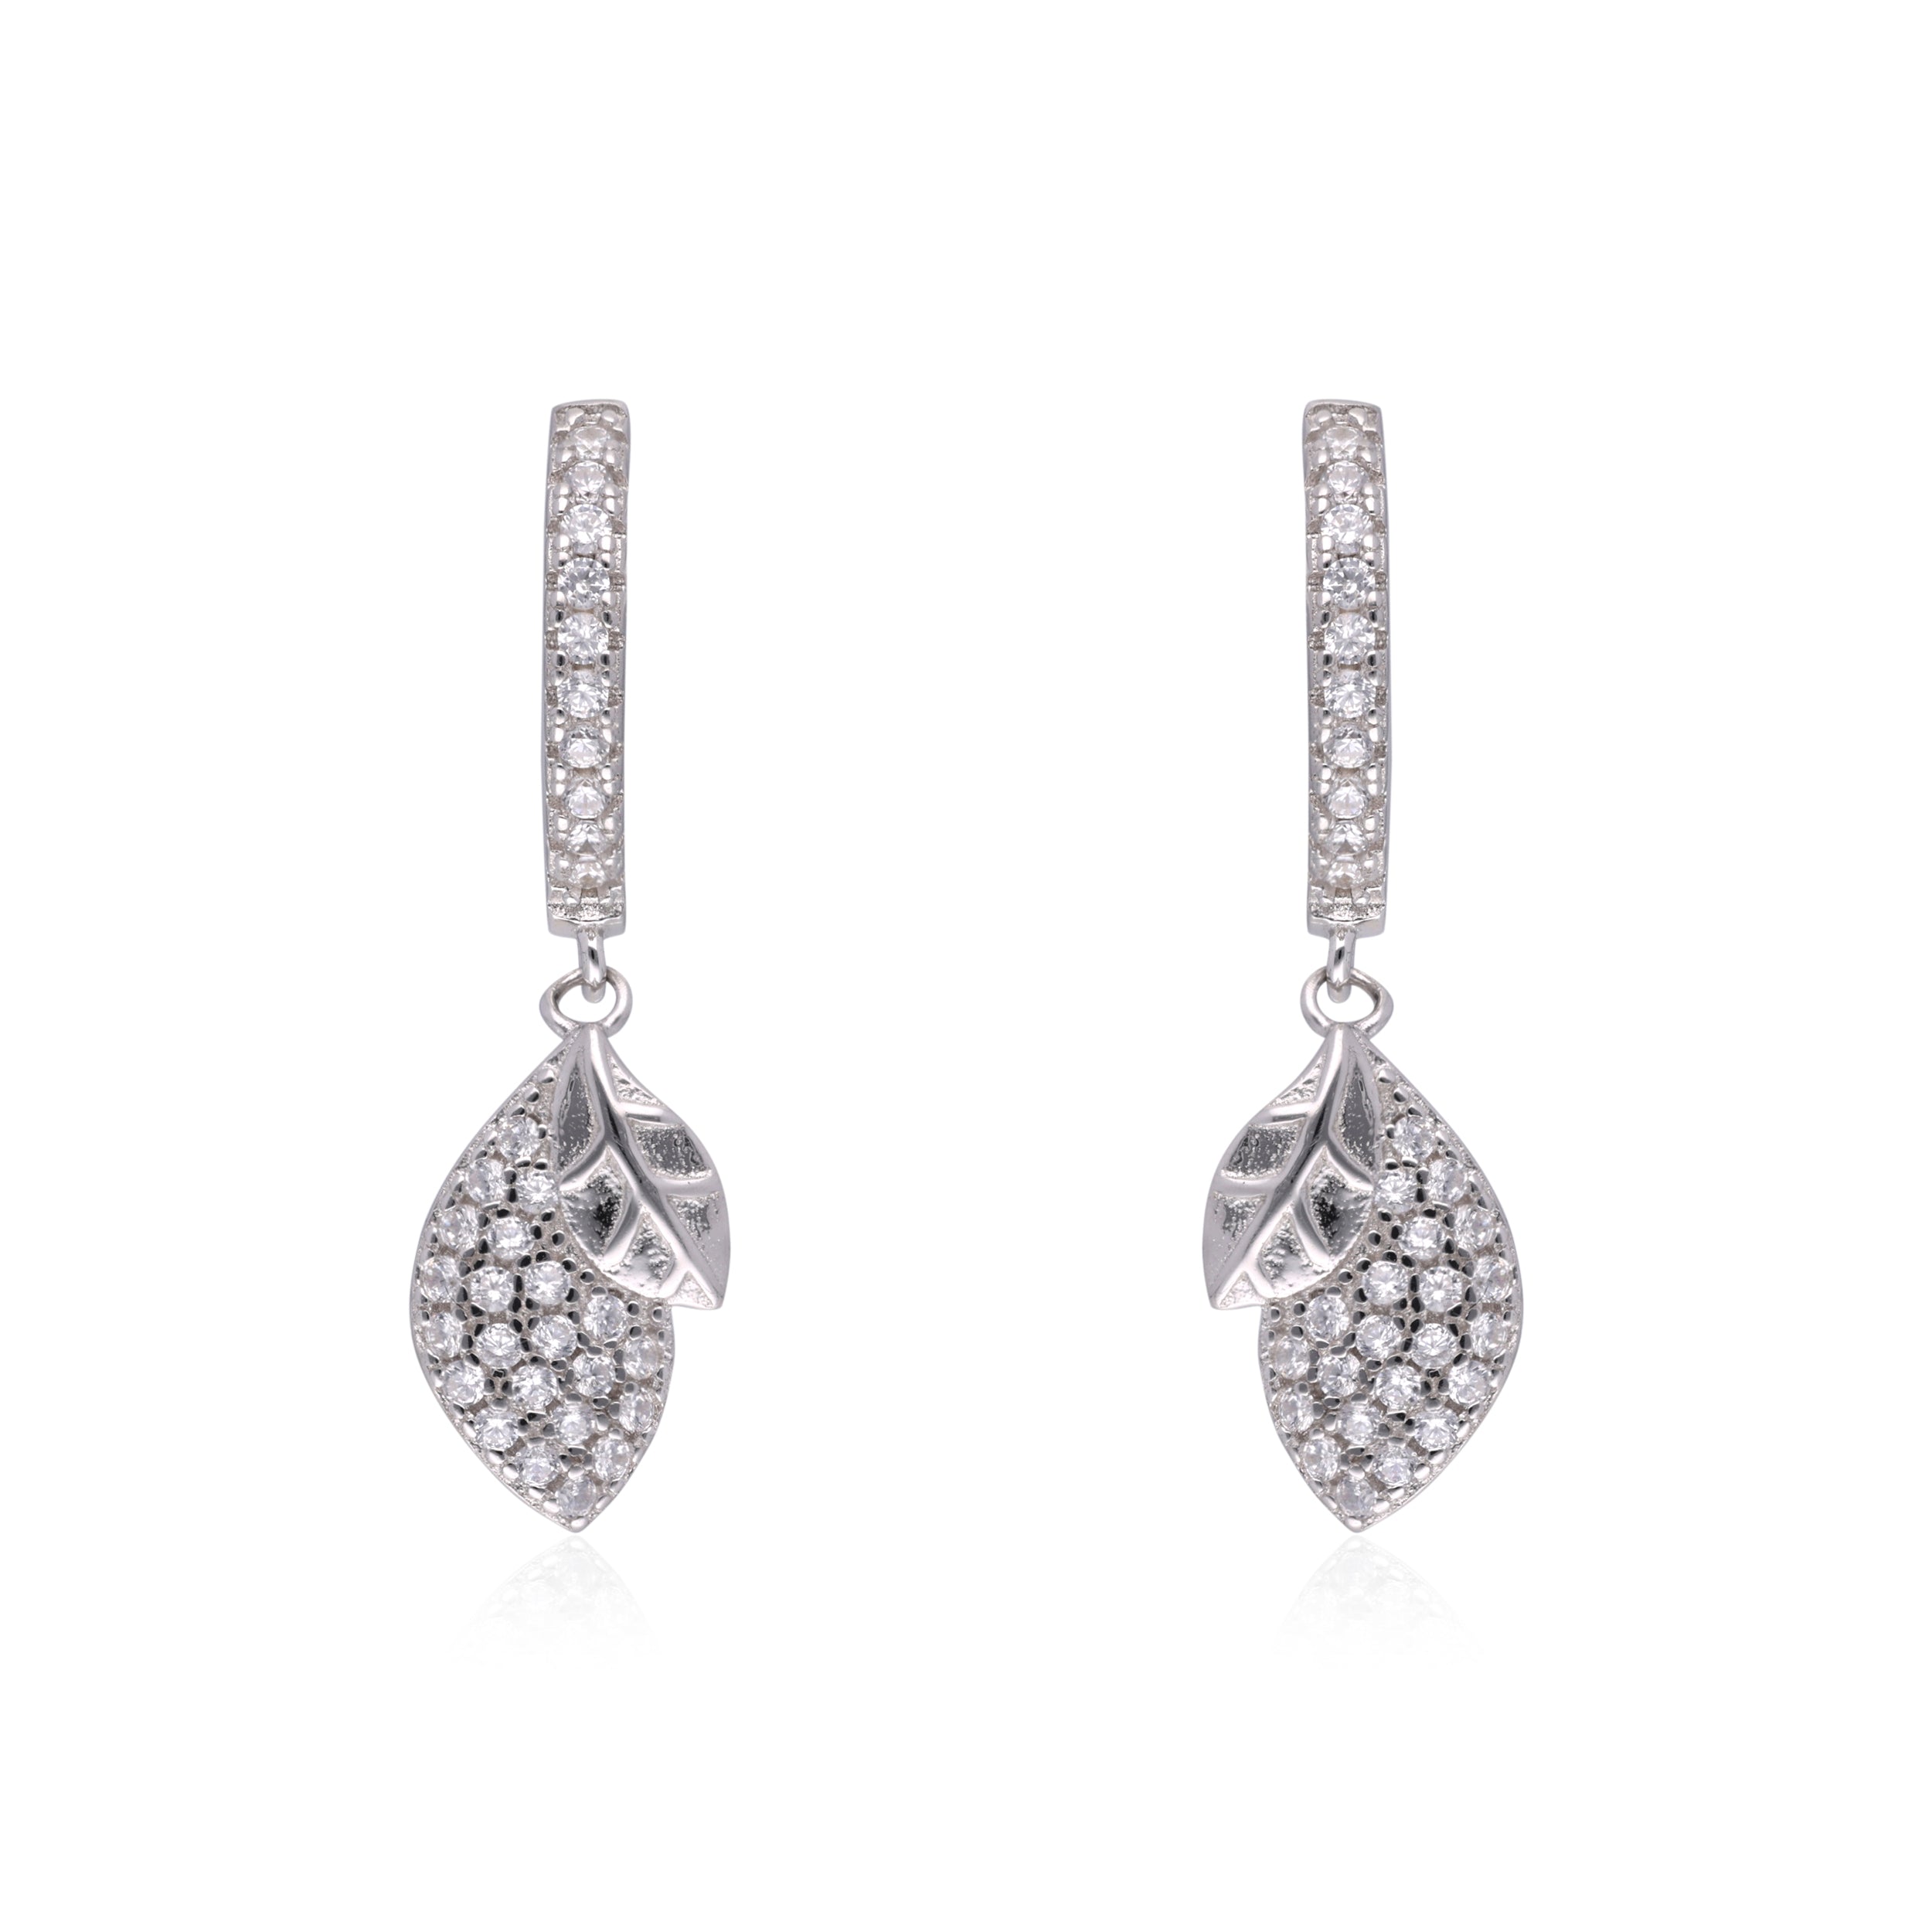 Pave Diamond Leaf Dangle Earrings | SKU : 0003109205, 0003109229, 0003109236